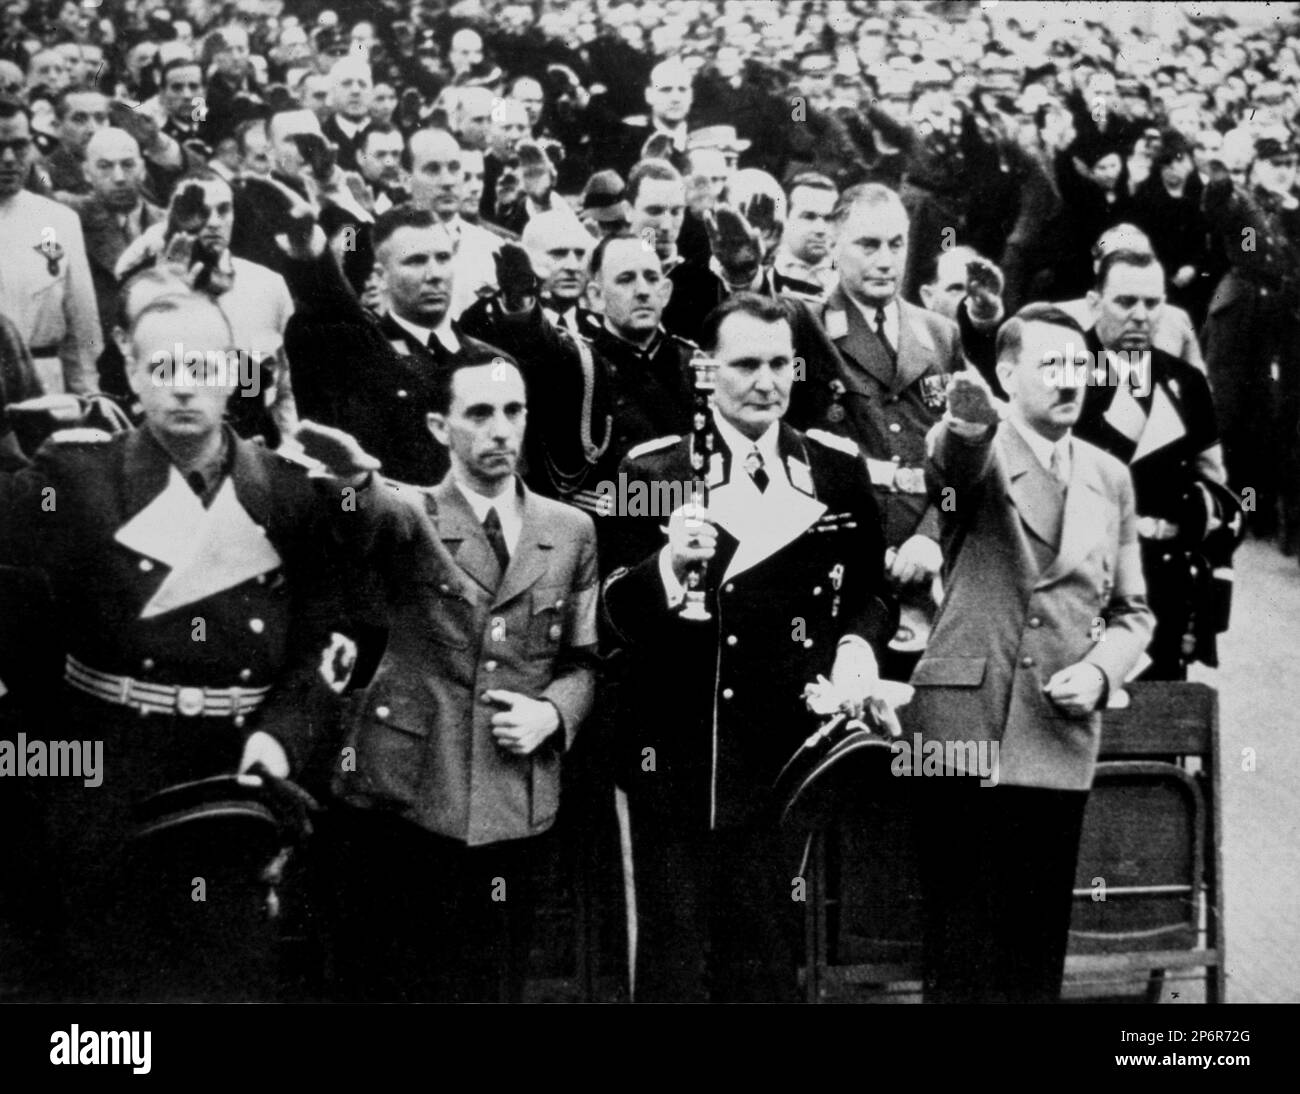 1930's, GERMANY  : The german dictator  ADOLF HITLER ( 1889 - 1945 ) with HERMANN GOERING ( 1893 - 1946 ), JOSEPH GOEBBELS ( 1897 - 1945 ) and JOACHIM VON RIBBENTROP ( 1893 - 1946 ).  - WWII - NAZI - NAZIST - SECONDA GUERRA MONDIALE - NAZISMO - NAZISTA - dittatore - baffi - moustache  - POLITICA - POLITICO - ritratto - portrait - svastica - cravatta - tie - collar - colletto  ---- Archivio GBB Stock Photo